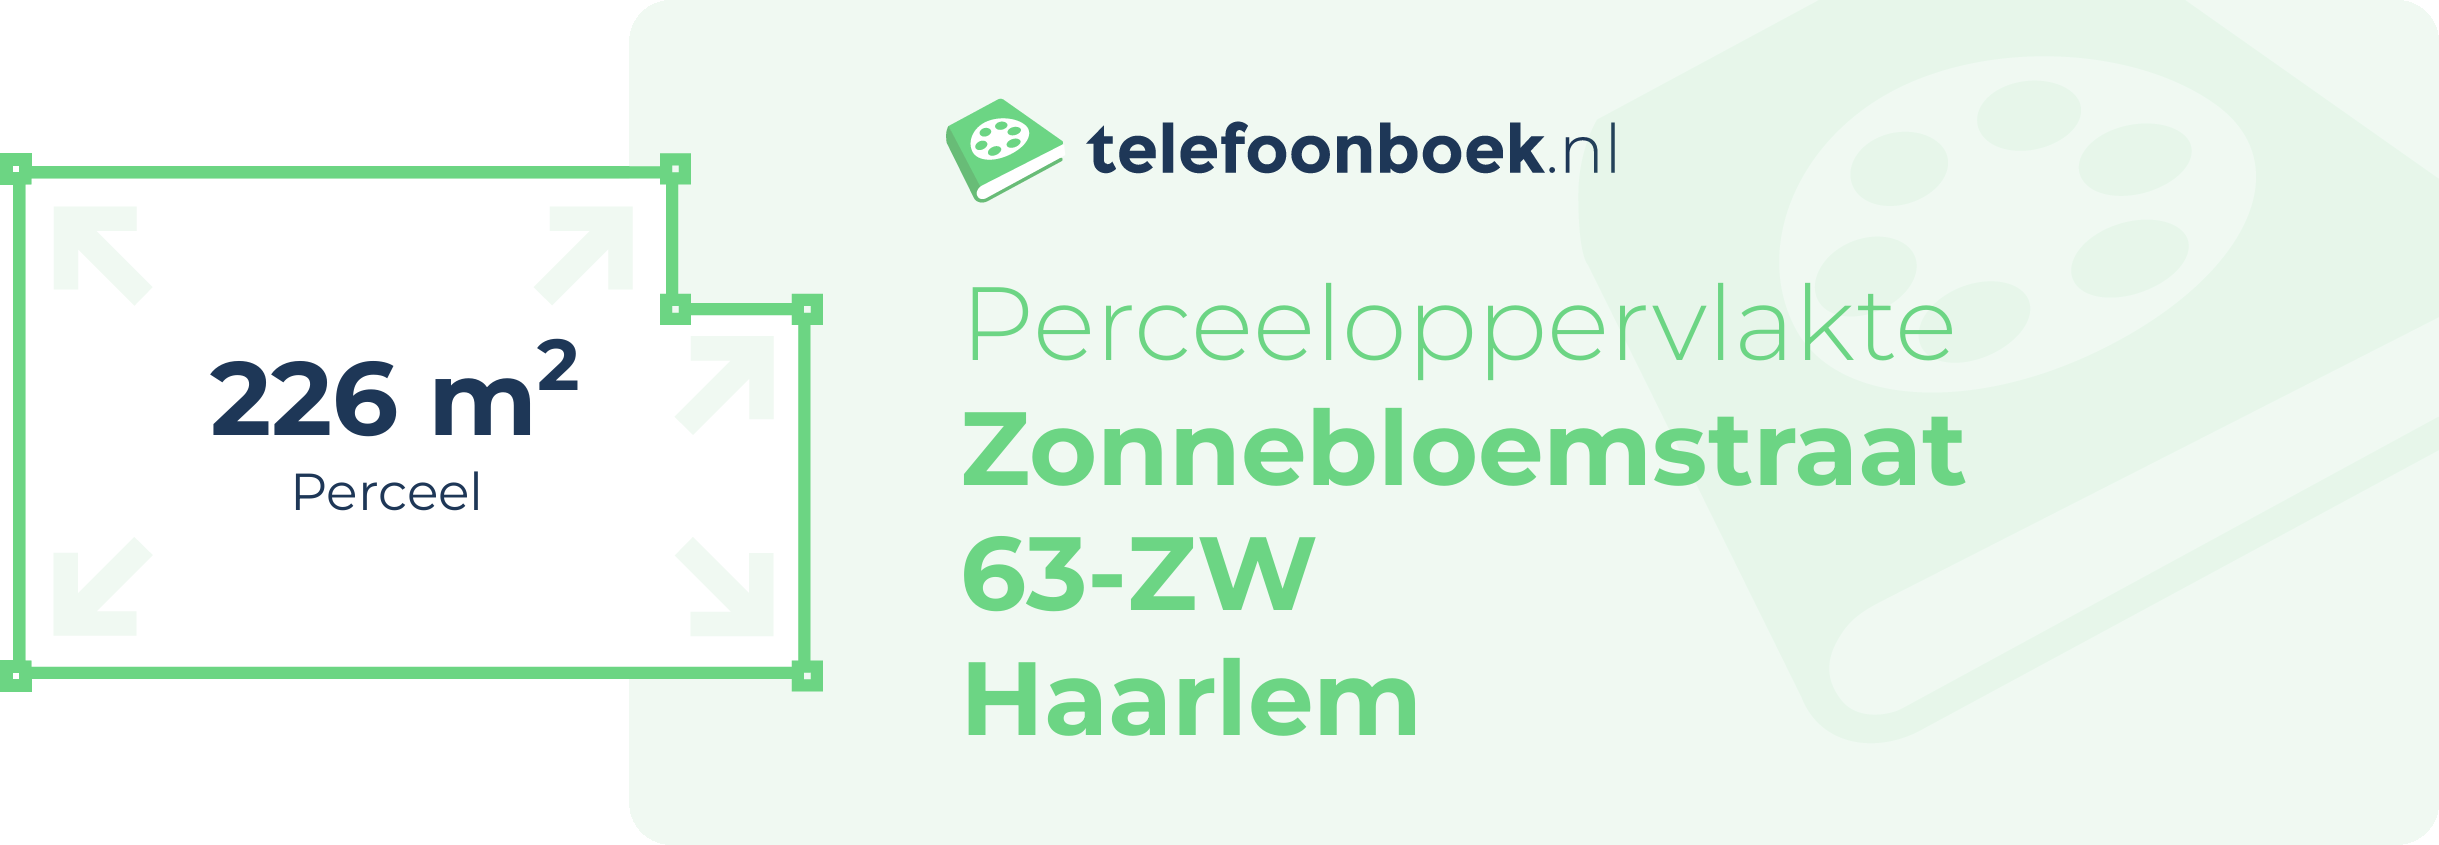 Perceeloppervlakte Zonnebloemstraat 63-ZW Haarlem